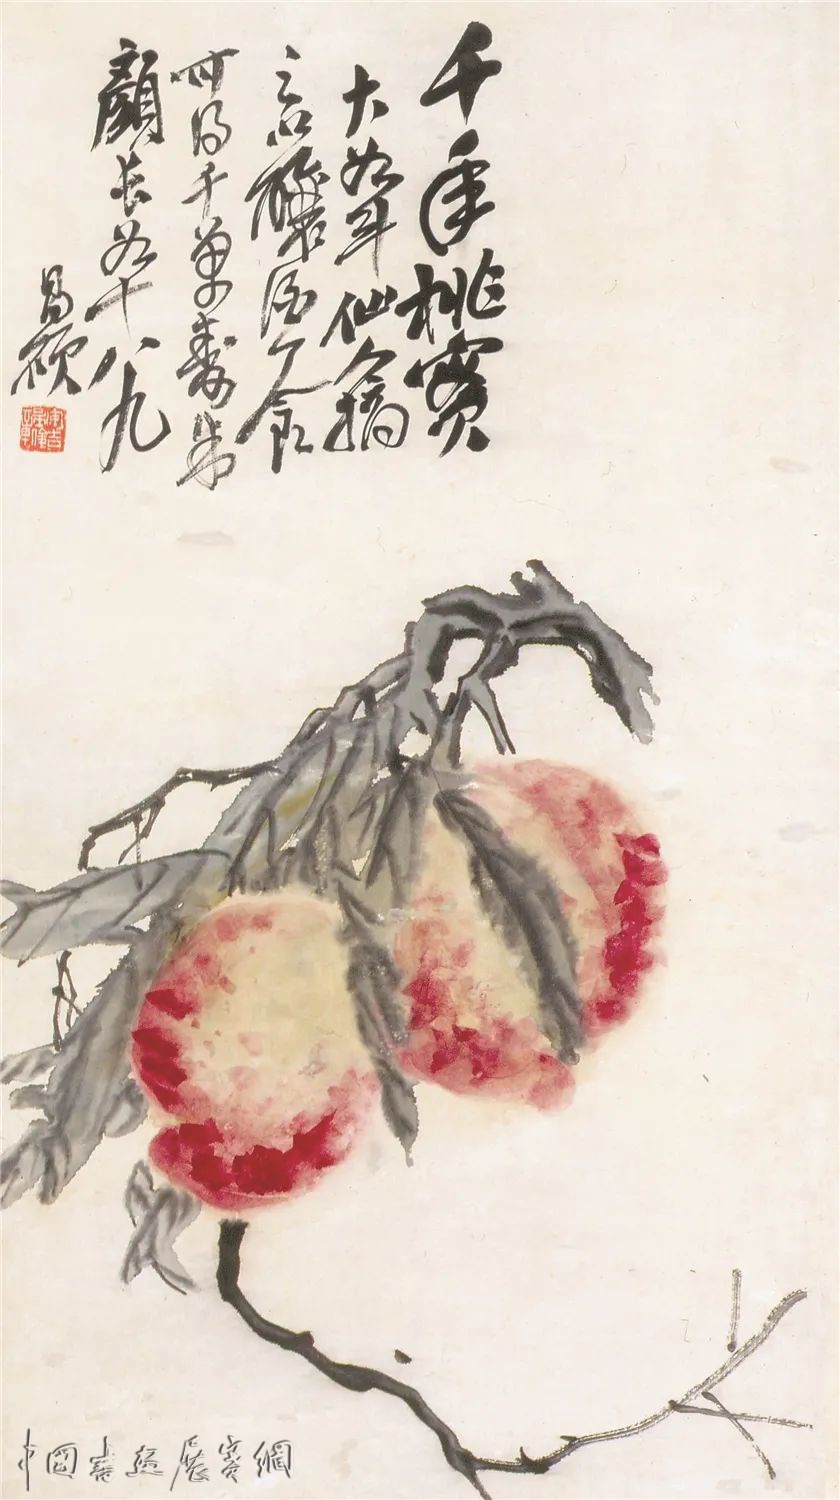 中国画里的一抹红：看缶翁红桃与白石朱竹| 中国书画展赛网